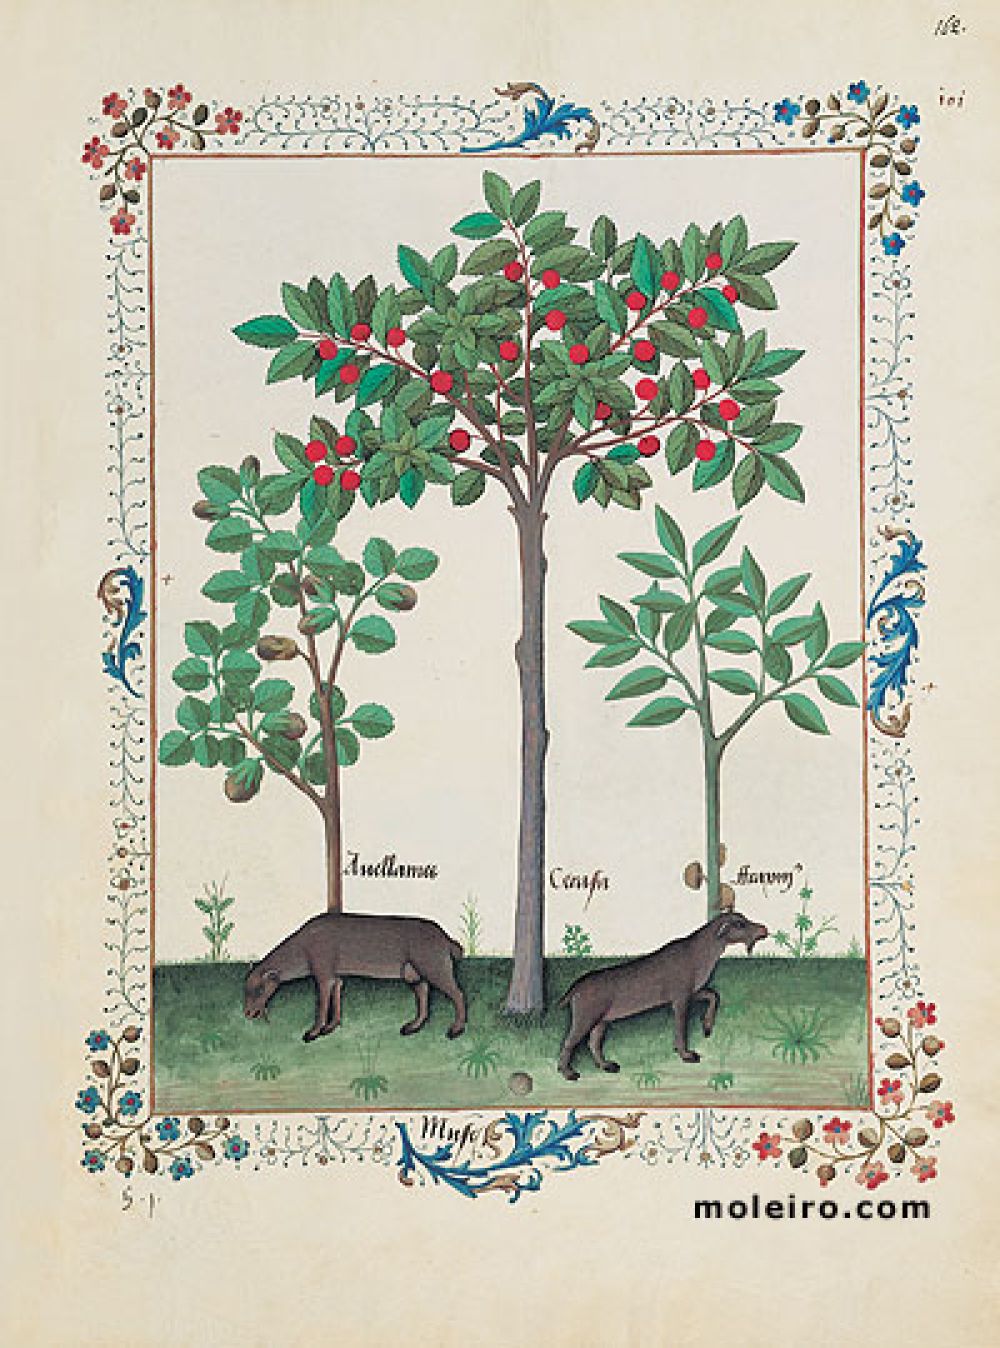 The Book of Simple Medicines folio 162r